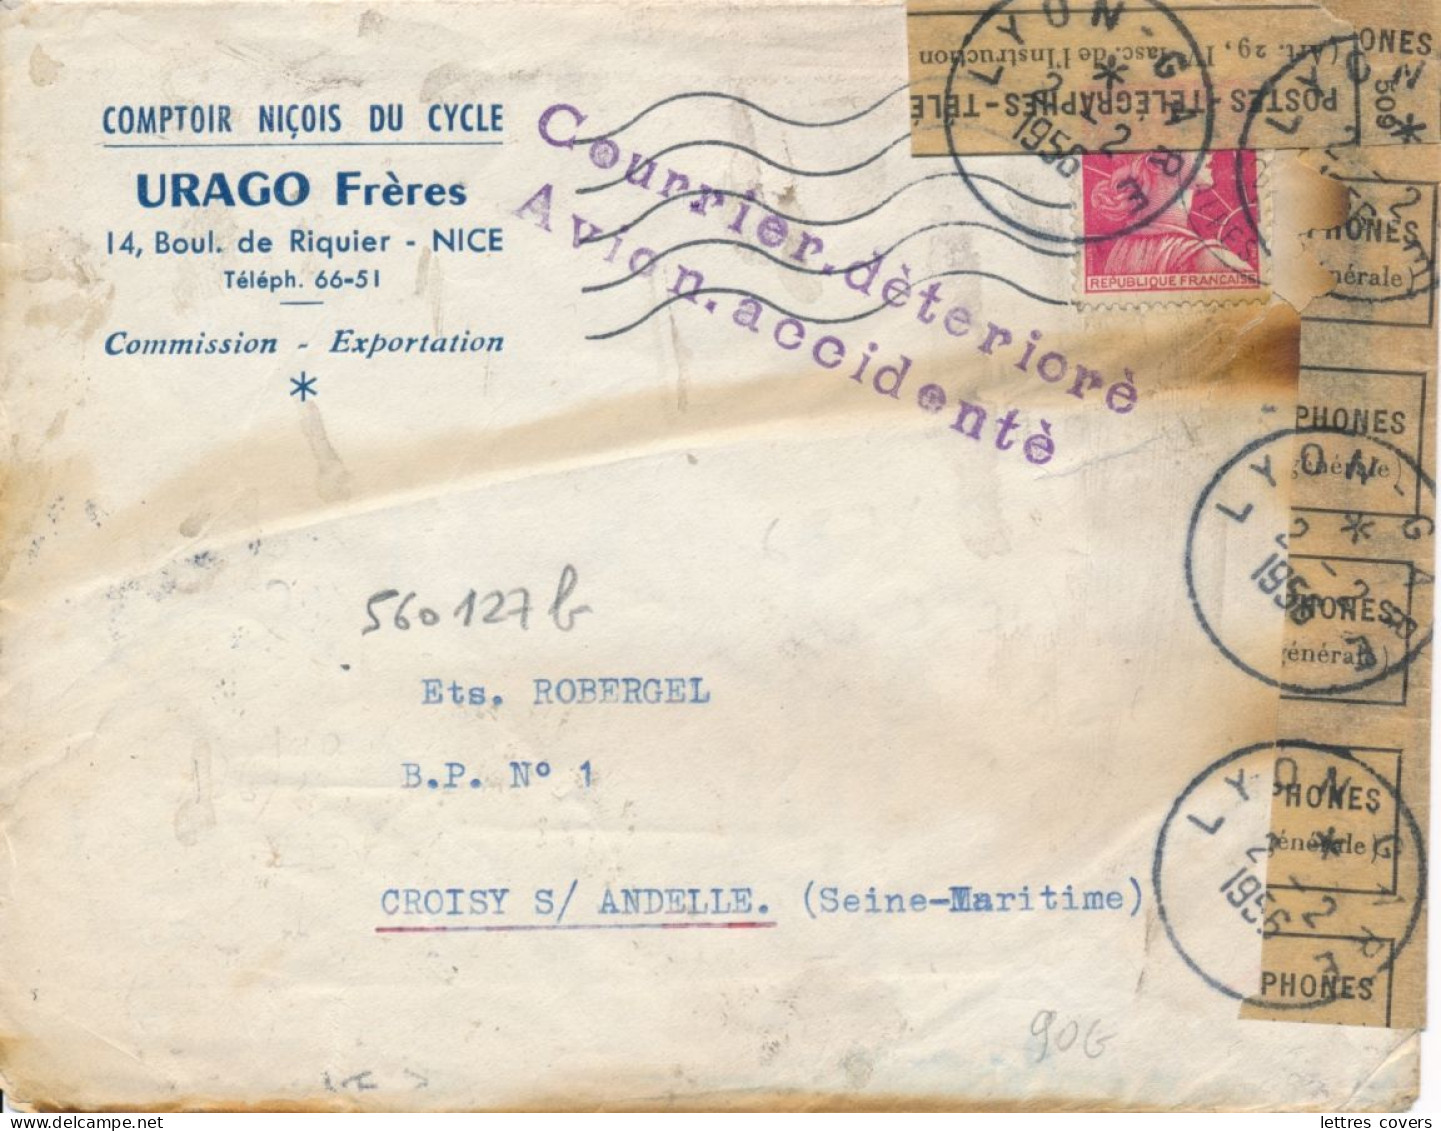 1956 Griffe " COURRIER DÉTÉRIORÉ AVION ACCCIDENTÉ " Crash à Bron Aéroport 27/1/56 - Cat NIERINCK 560127b Muller Lettre - Unfallpost